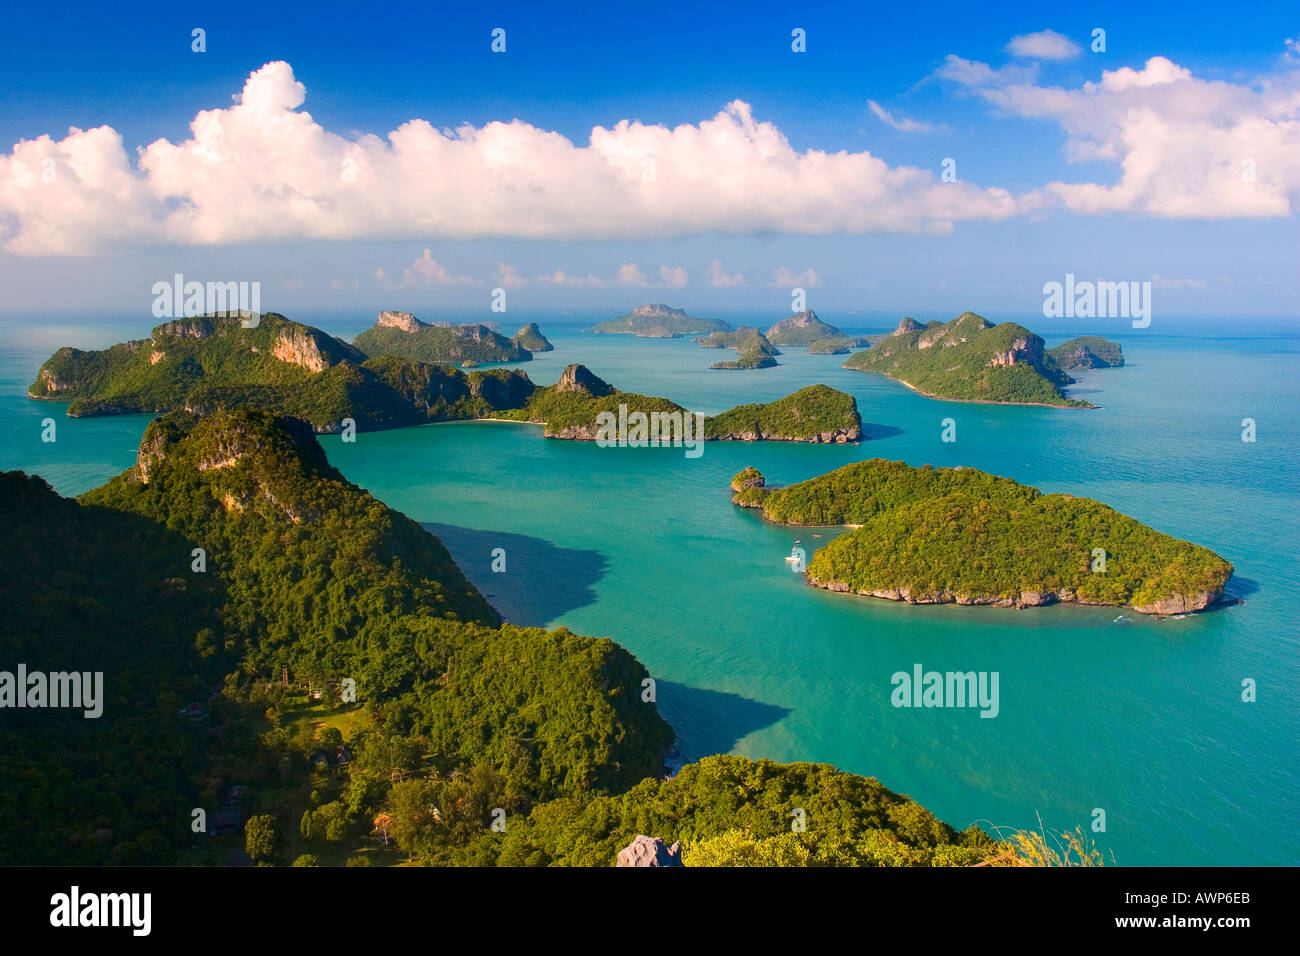 Aereal view of Ang Thong National Marine Park Ko Samui Thailand Stock Photo